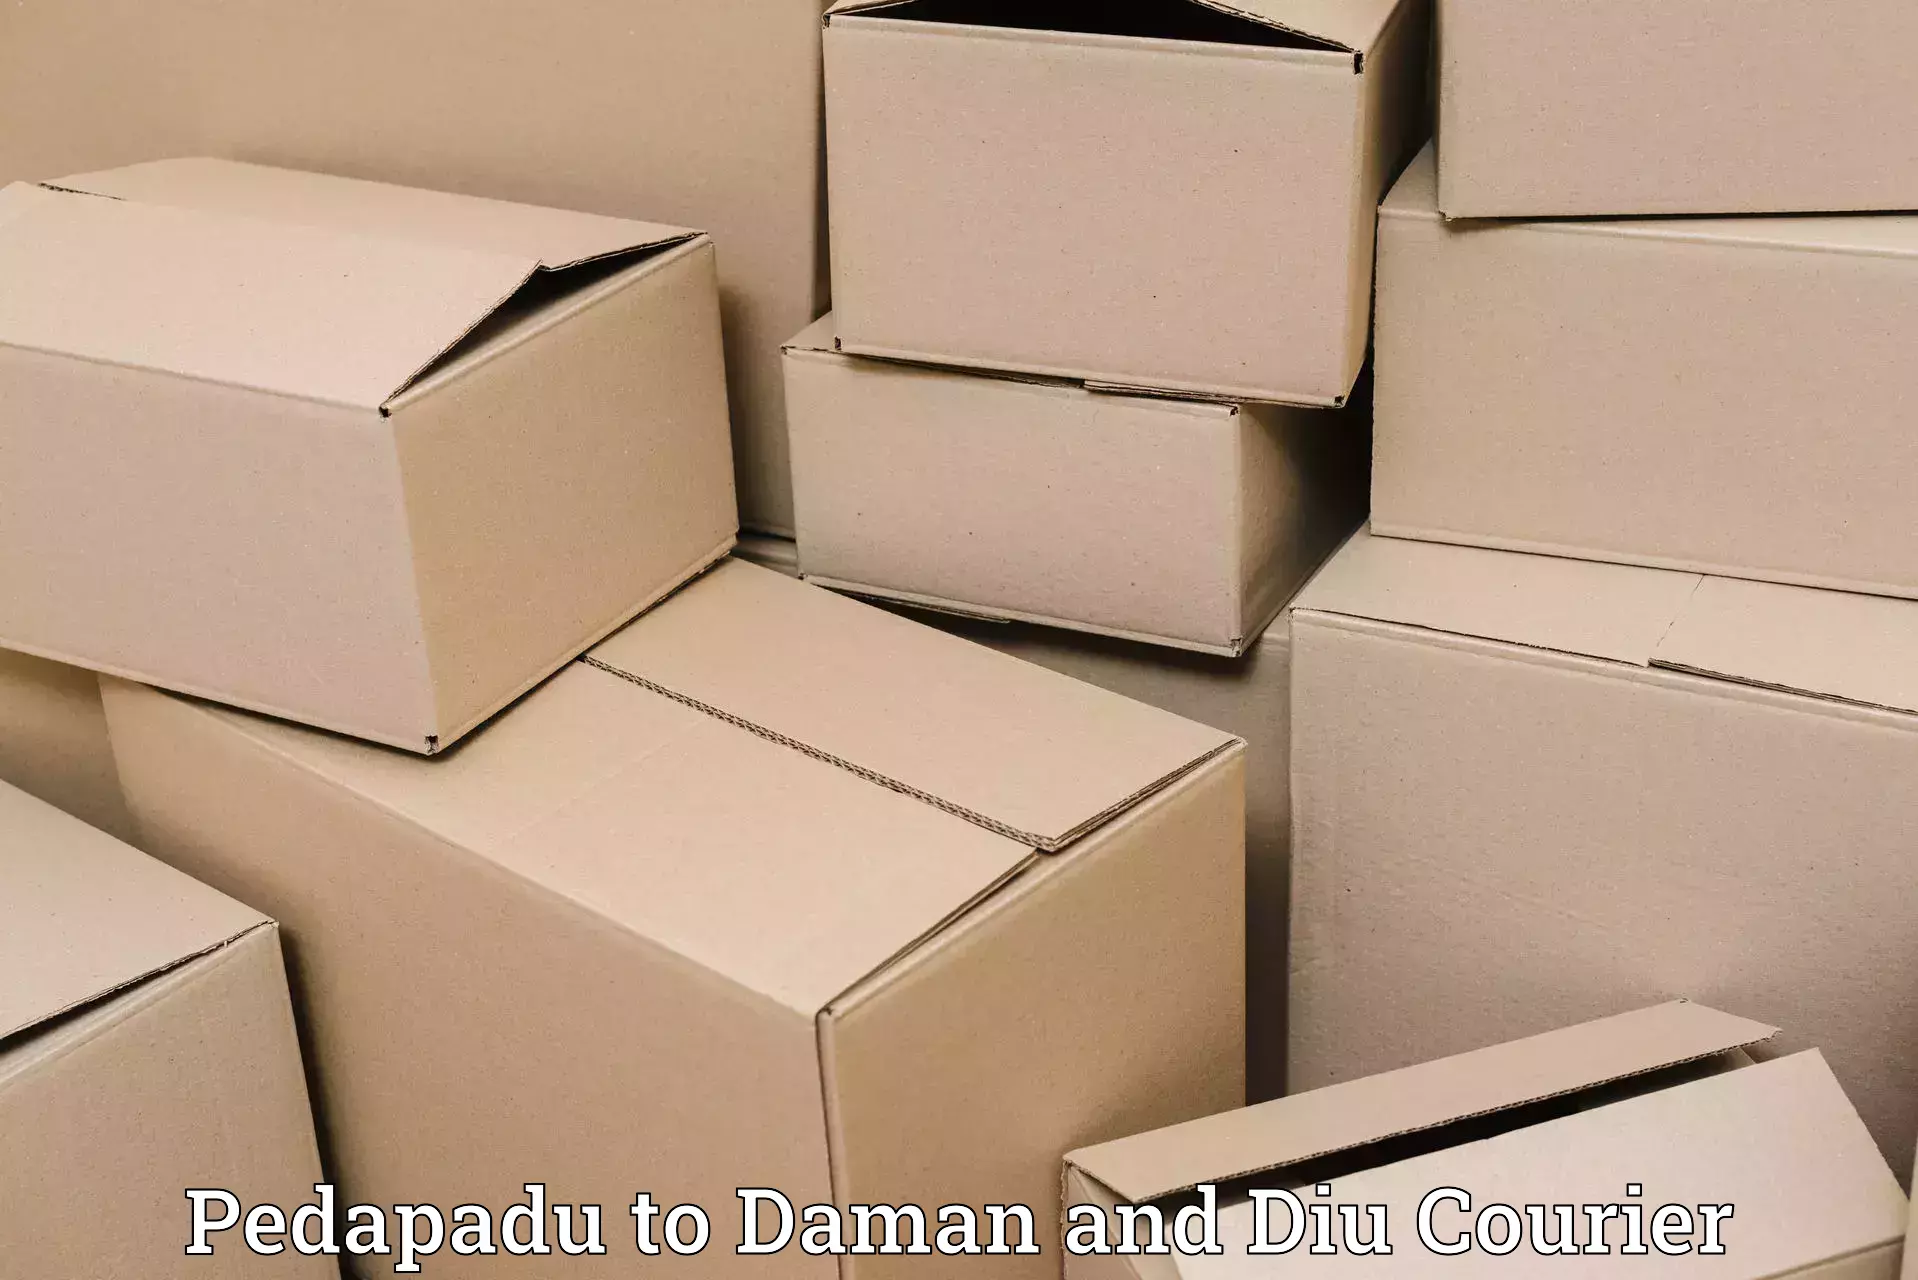 Weekend courier service Pedapadu to Daman